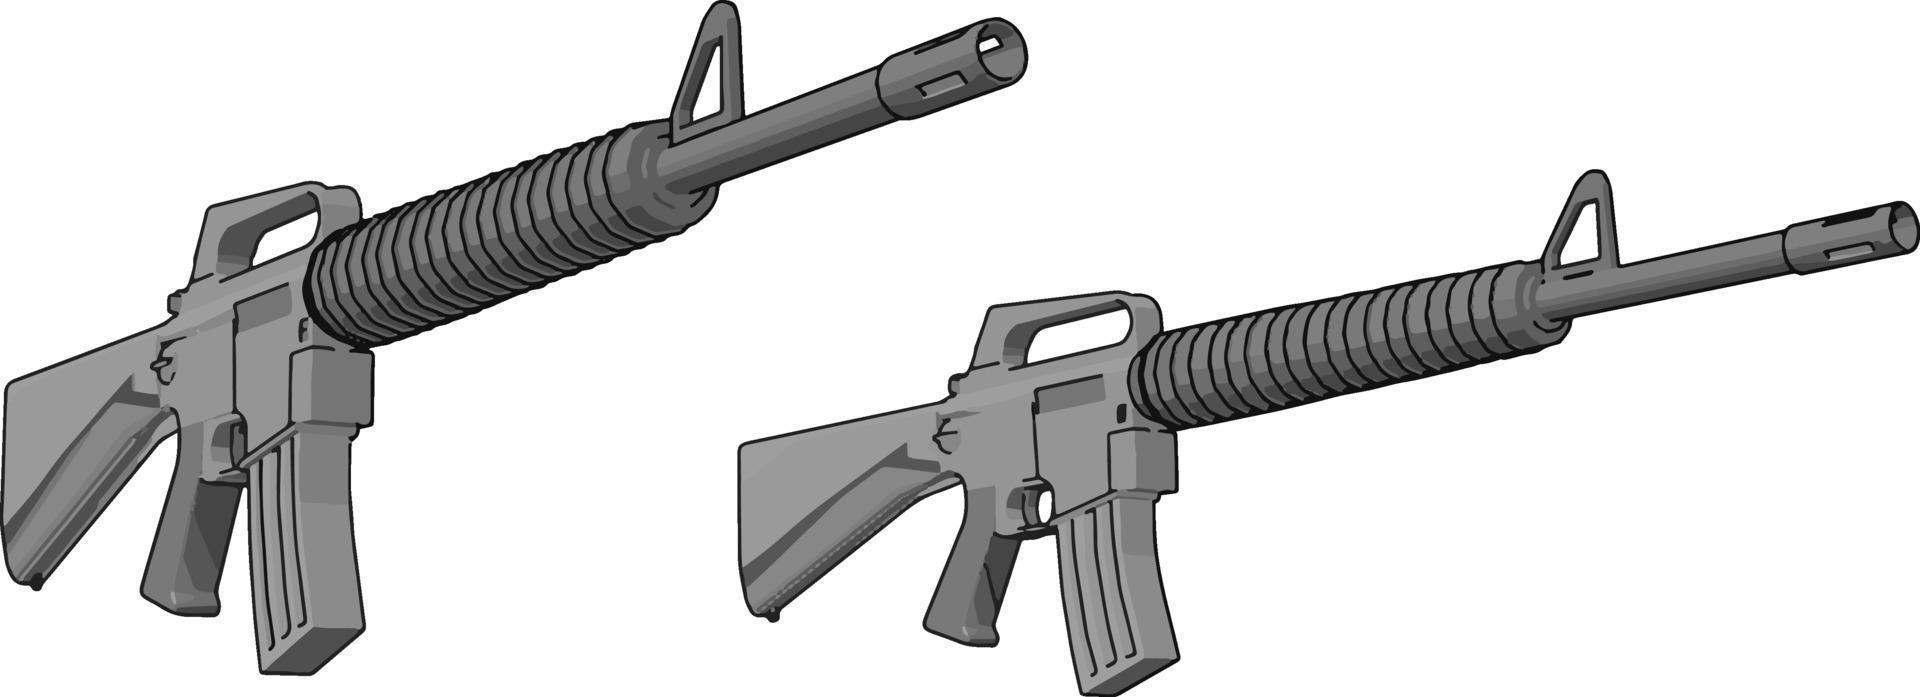 Militärgewehr, Illustration, Vektor auf weißem Hintergrund.